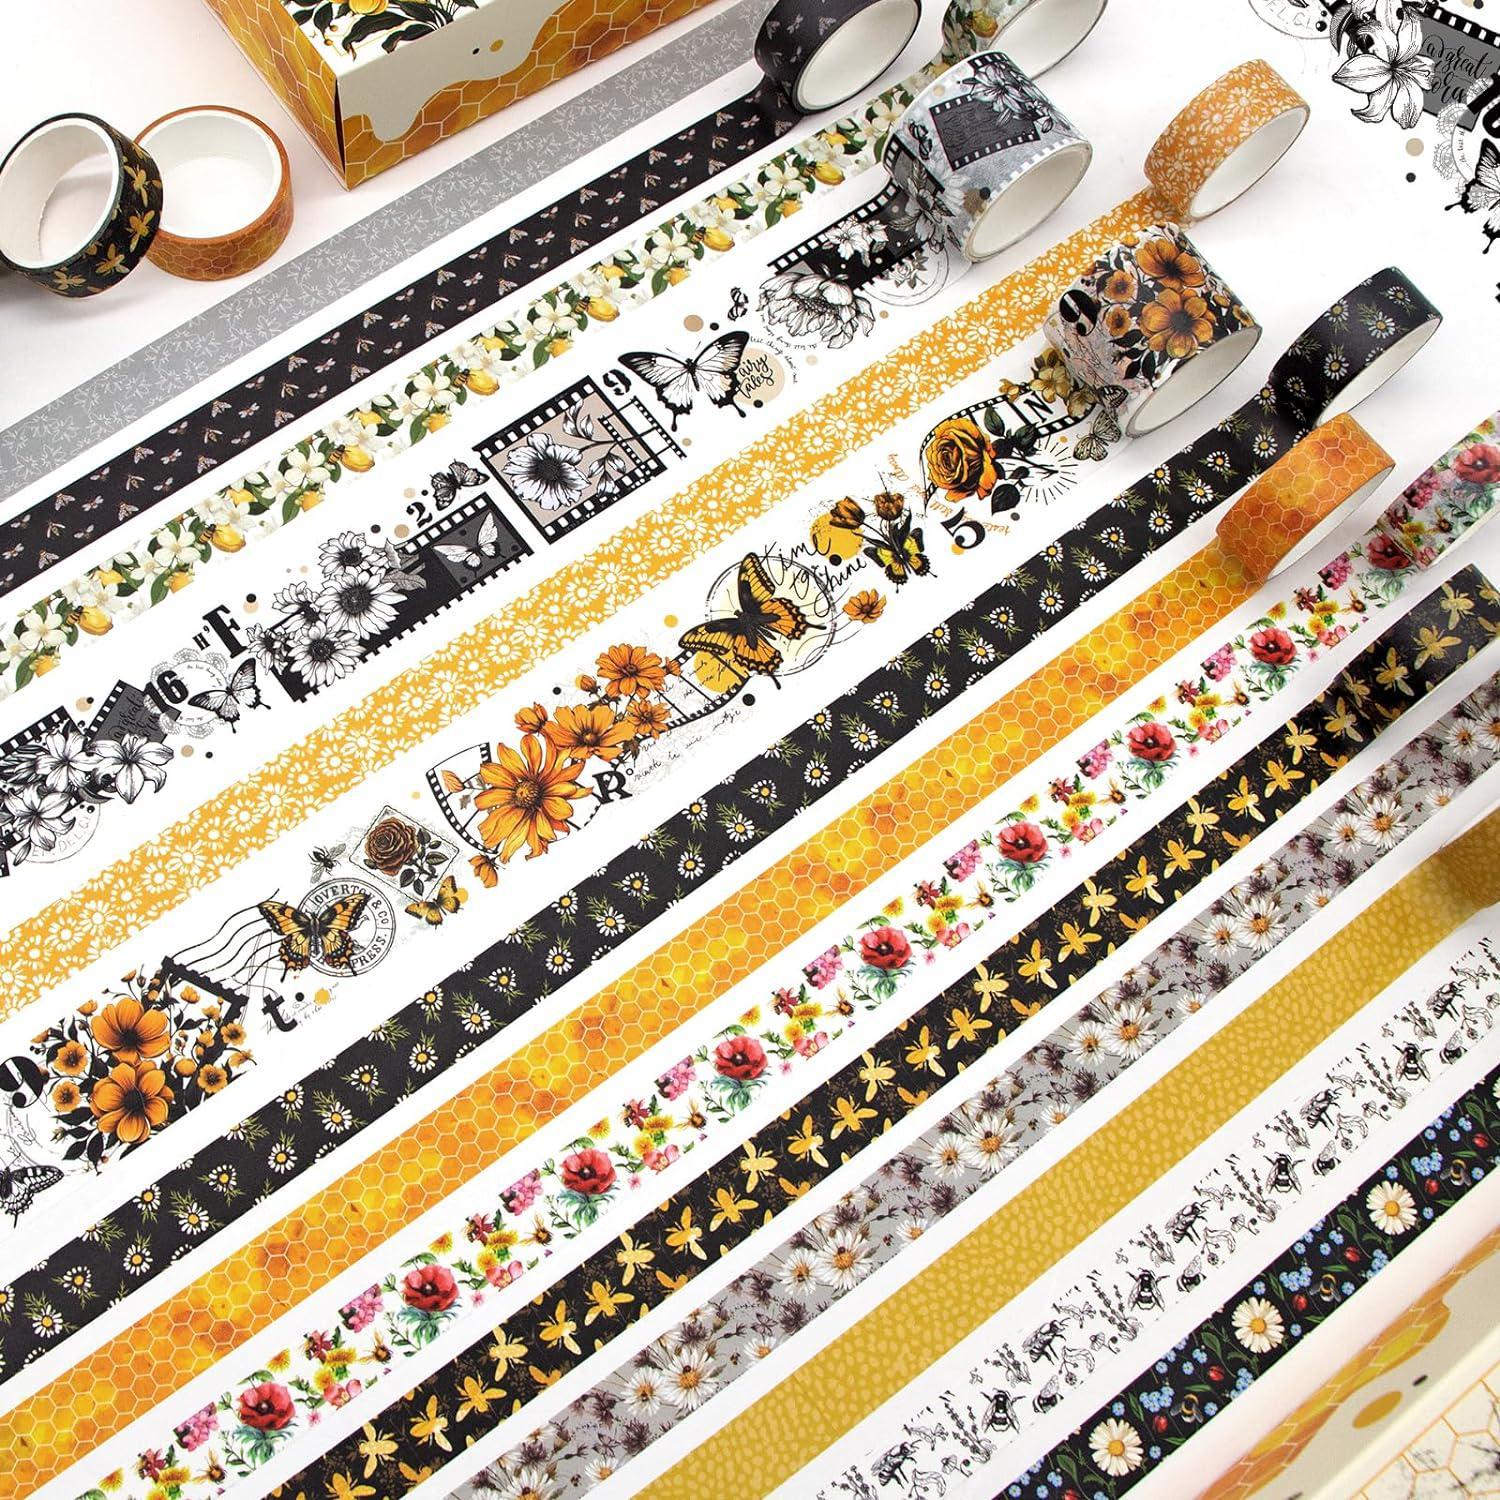  Tesuivra DIY Glitter Washi Tape Set - 12 Rolls Colored